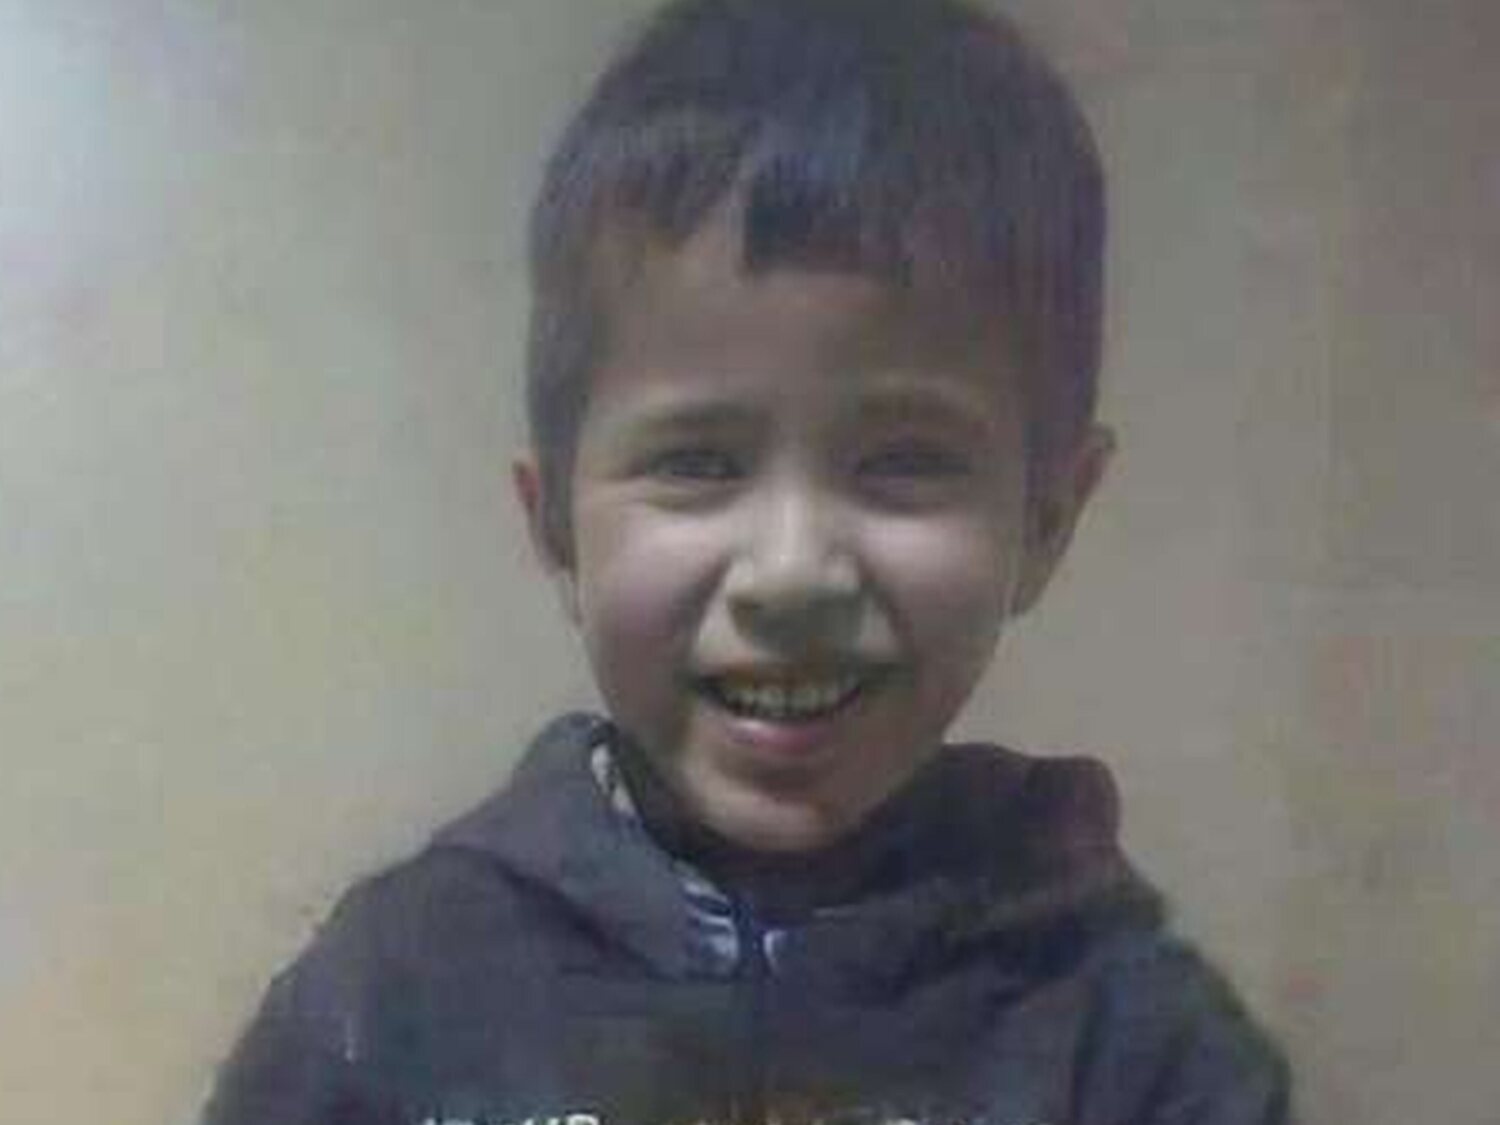 Encuentran muerto al pequeño Rayan, el niño que cayó a un pozo en Marruecos